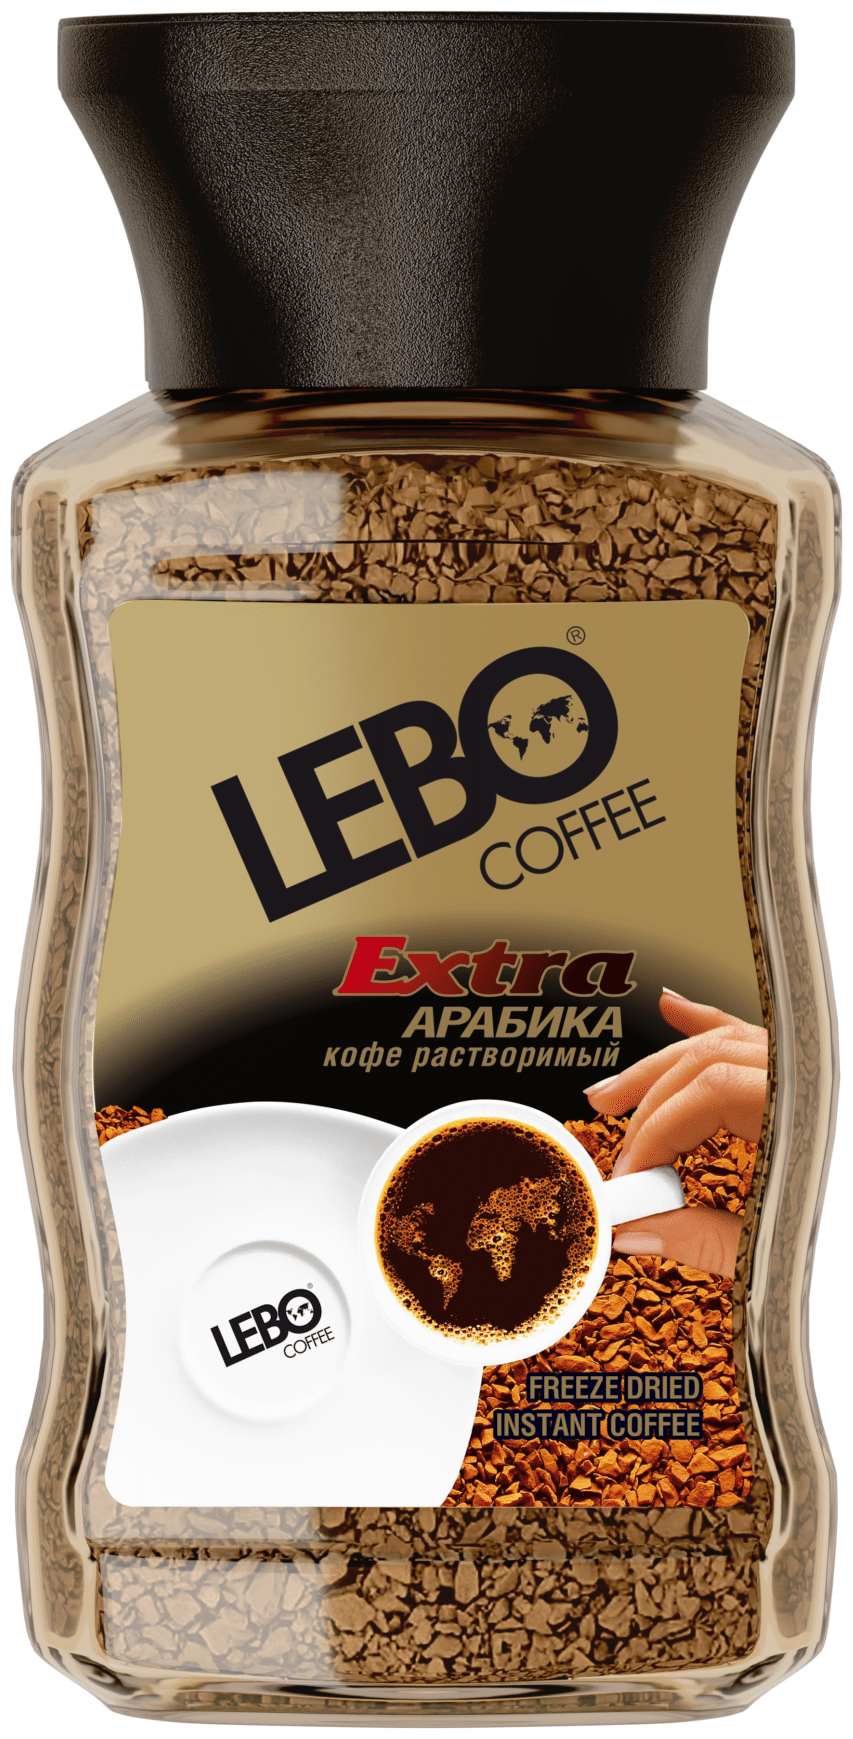 Кофе растворимый Lebo Extra, стеклянная банка, 100 г